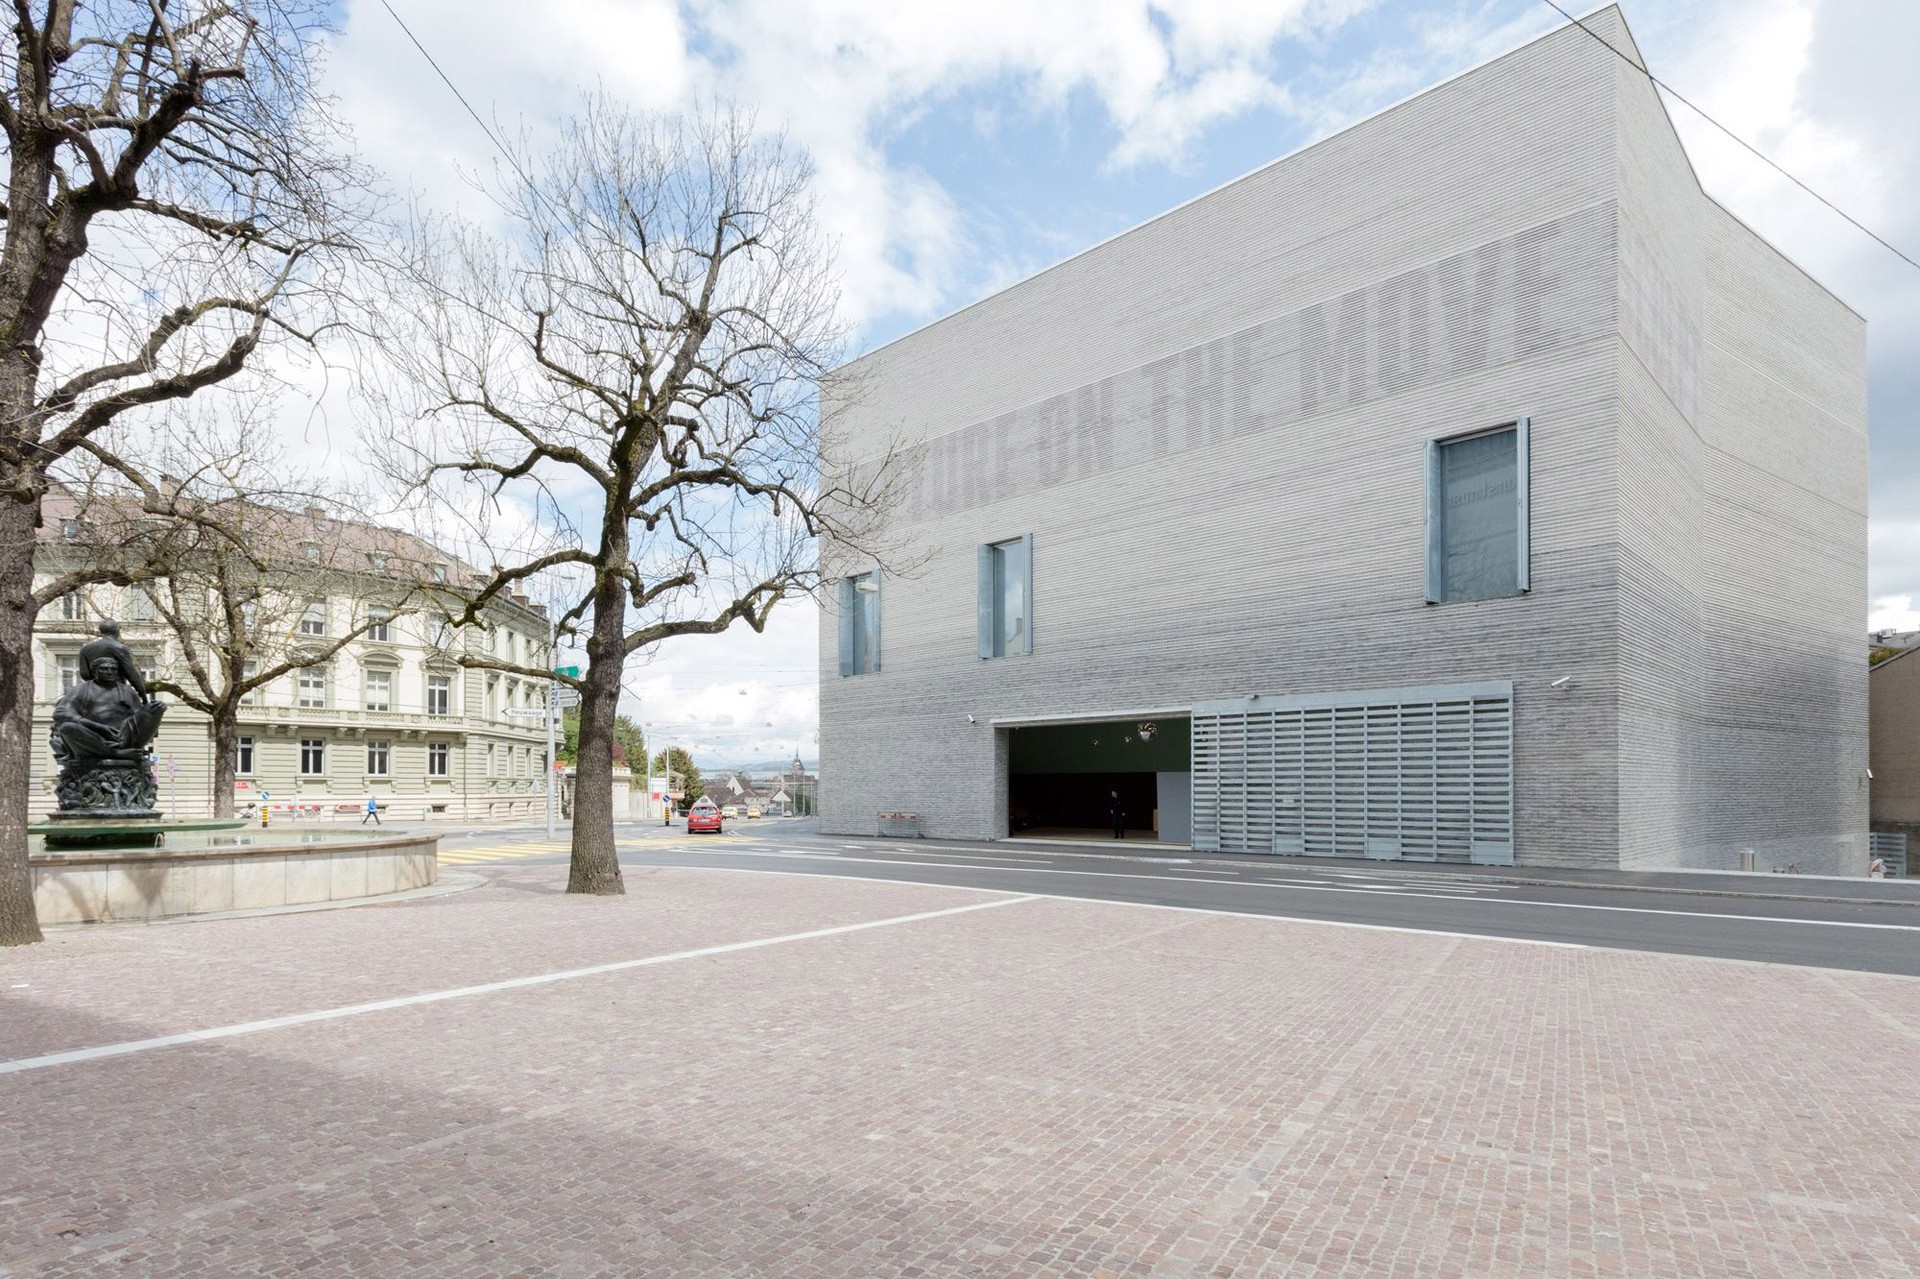 Progresivní švýcarský architekt Christoph Gantenbein poprvé vystoupí v Praze